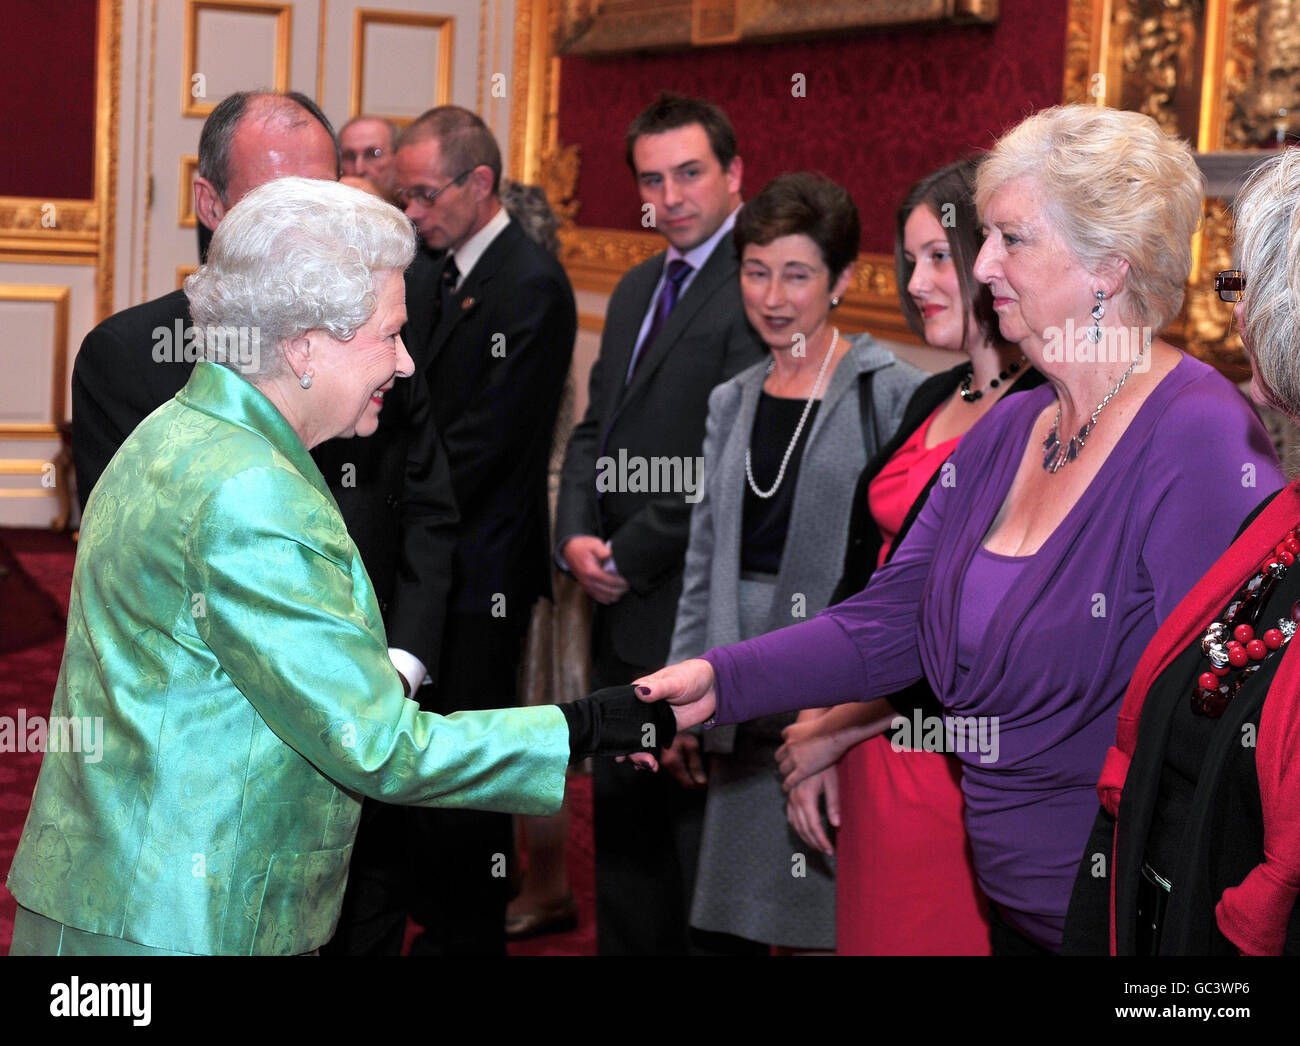 La regina Elisabetta II parla con Eileen Williams, la presidente regionale di Londra e del sud-est, durante, durante un ricevimento in occasione del 50° anniversario della fondazione nazionale di beneficenza della Cruse, a St James's Palace, questa sera. Foto Stock